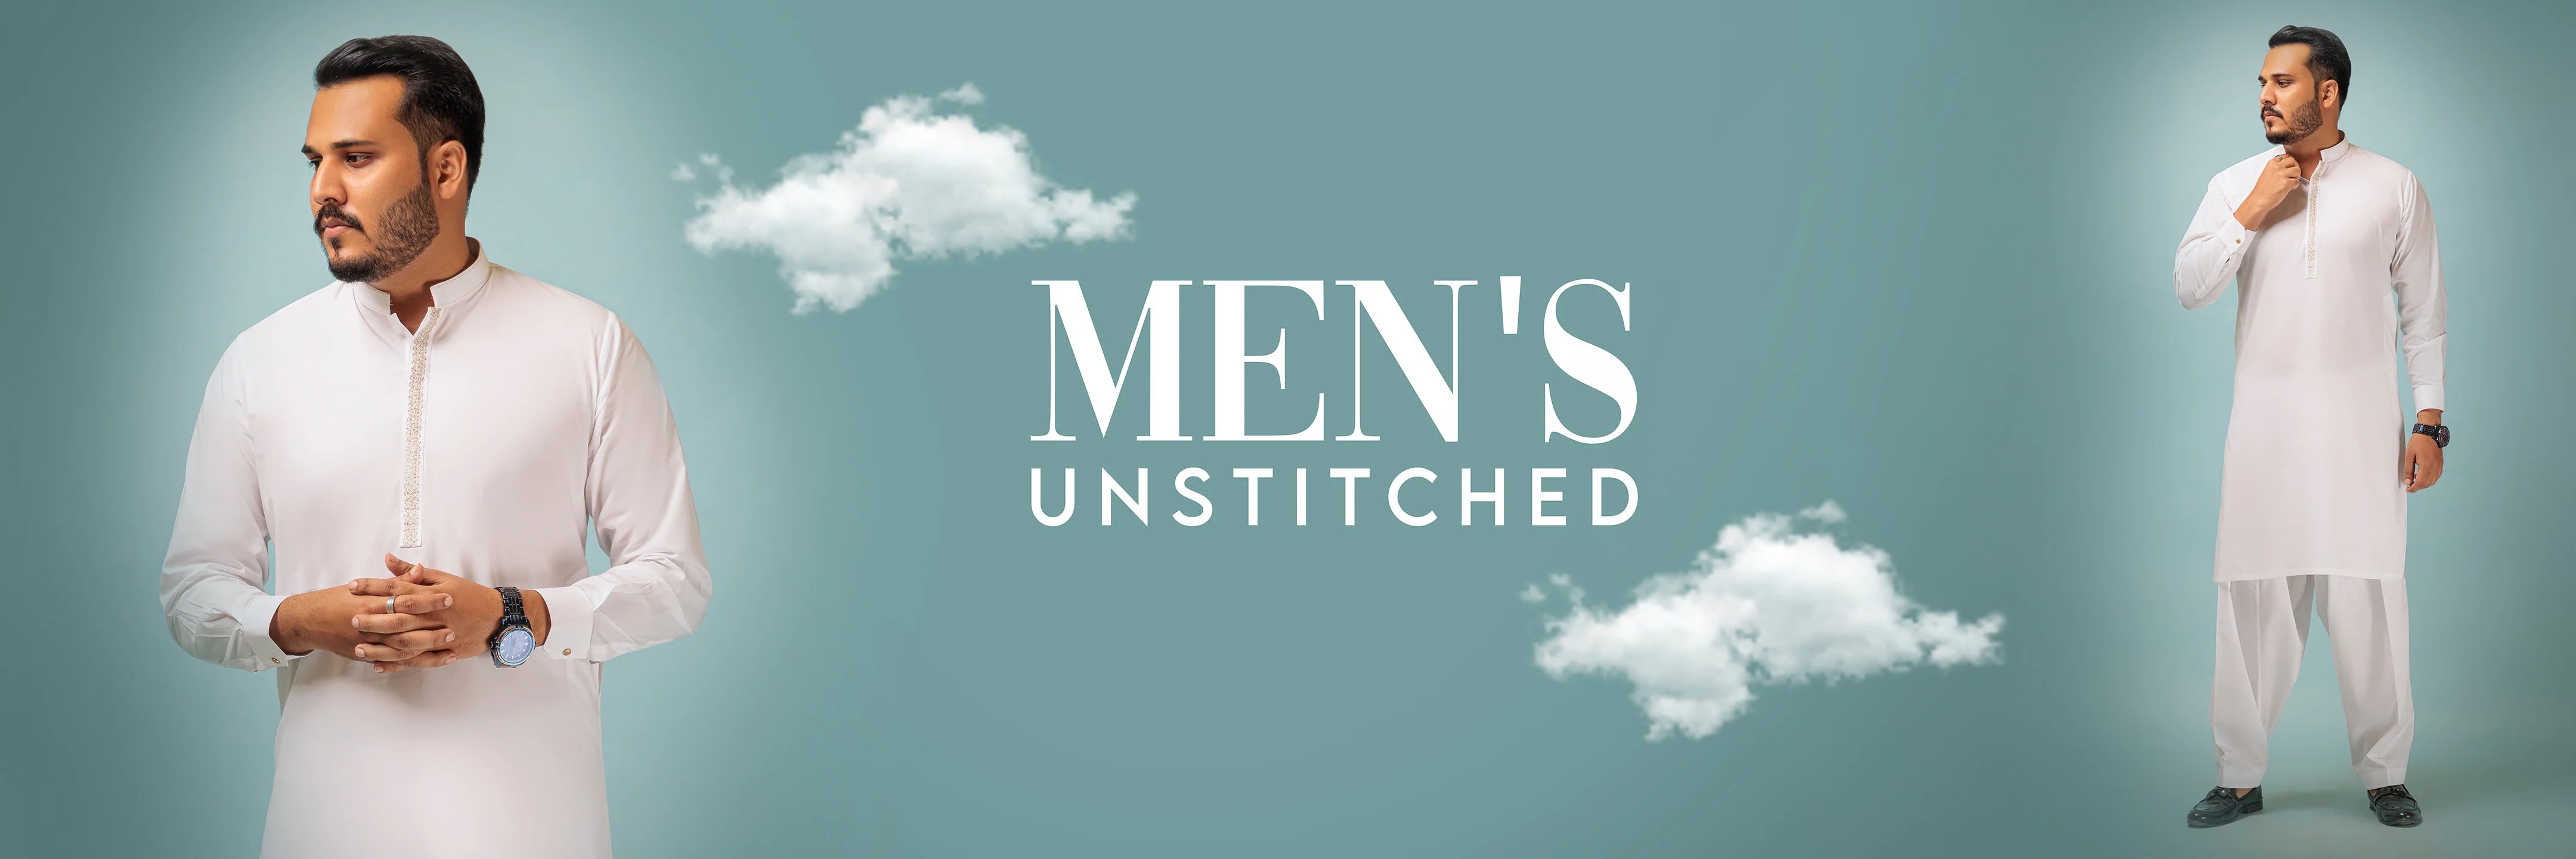 MEN | MEN'S UNSTITCHED